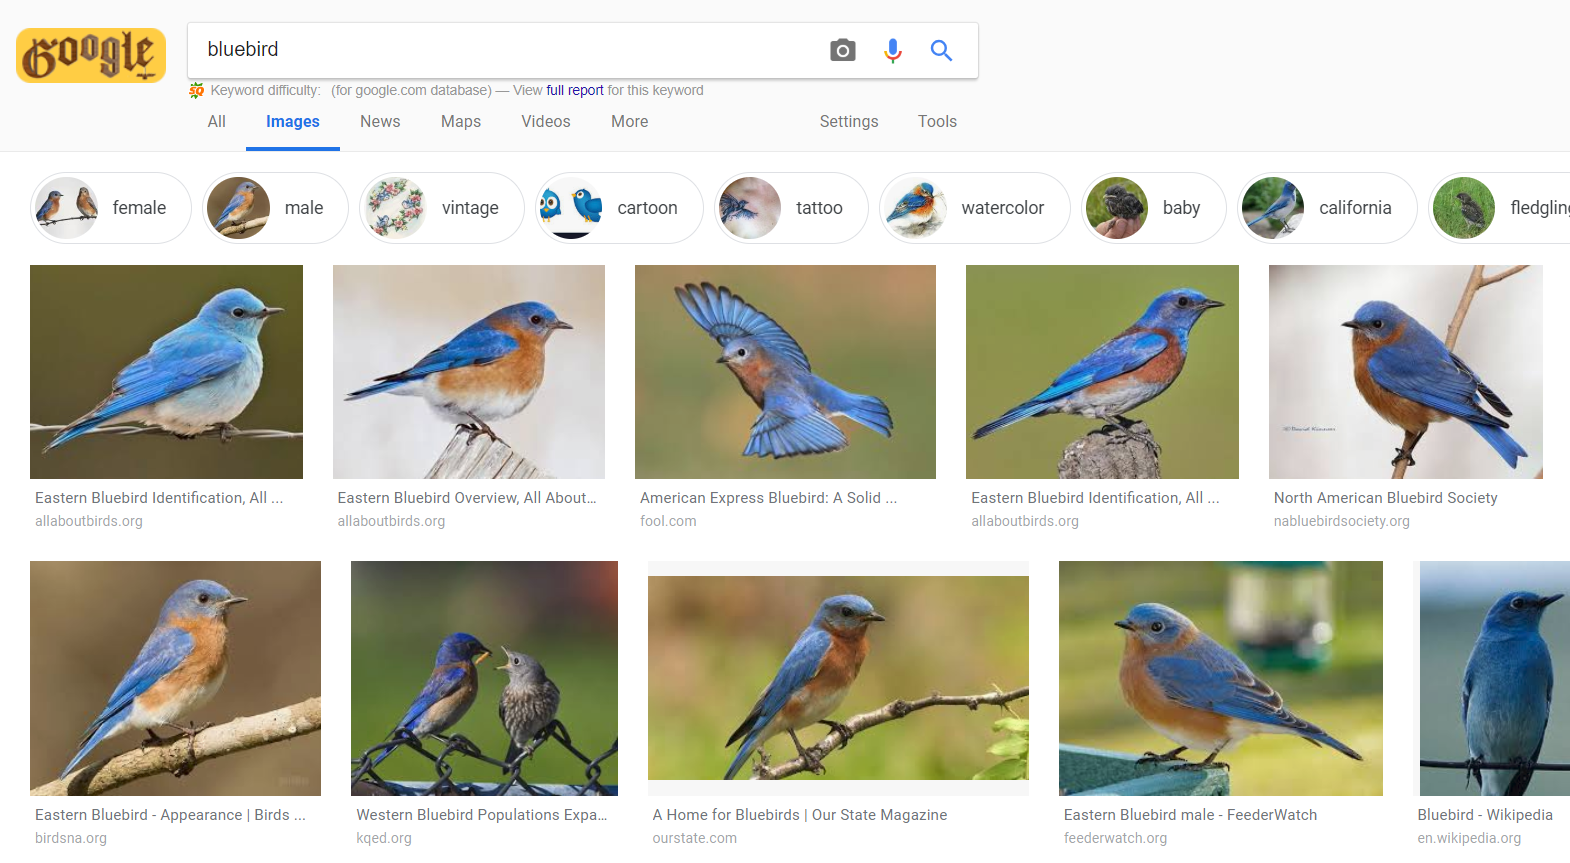 Kết quả tìm kiếm từ khóa "bluebird" trên Google Image